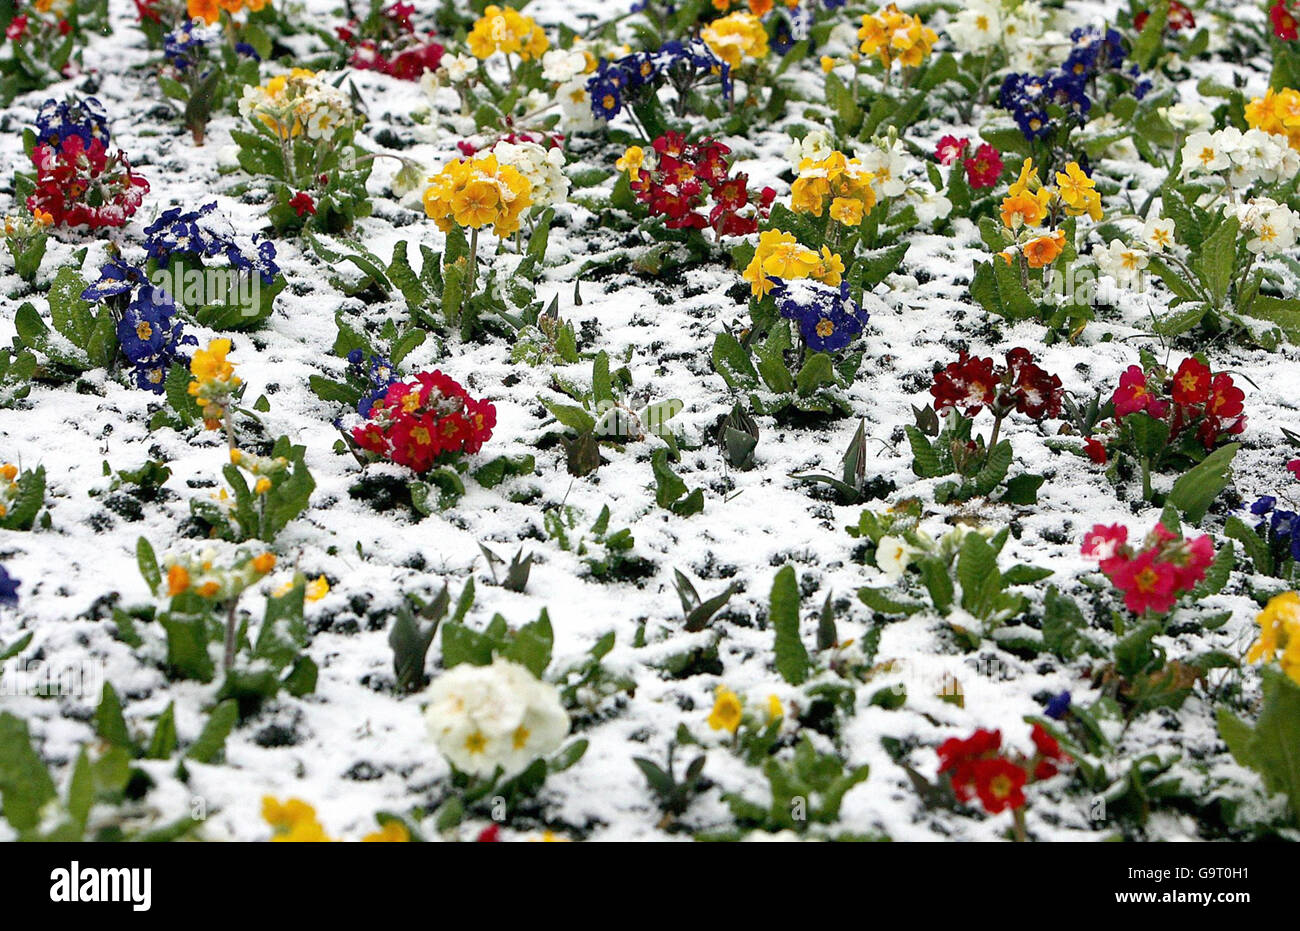 Der Frühling ist definitiv noch nicht angekommen, da die Blumen in Whitley Bay im Nordosten Englands mit Schnee bedeckt sind. Stockfoto